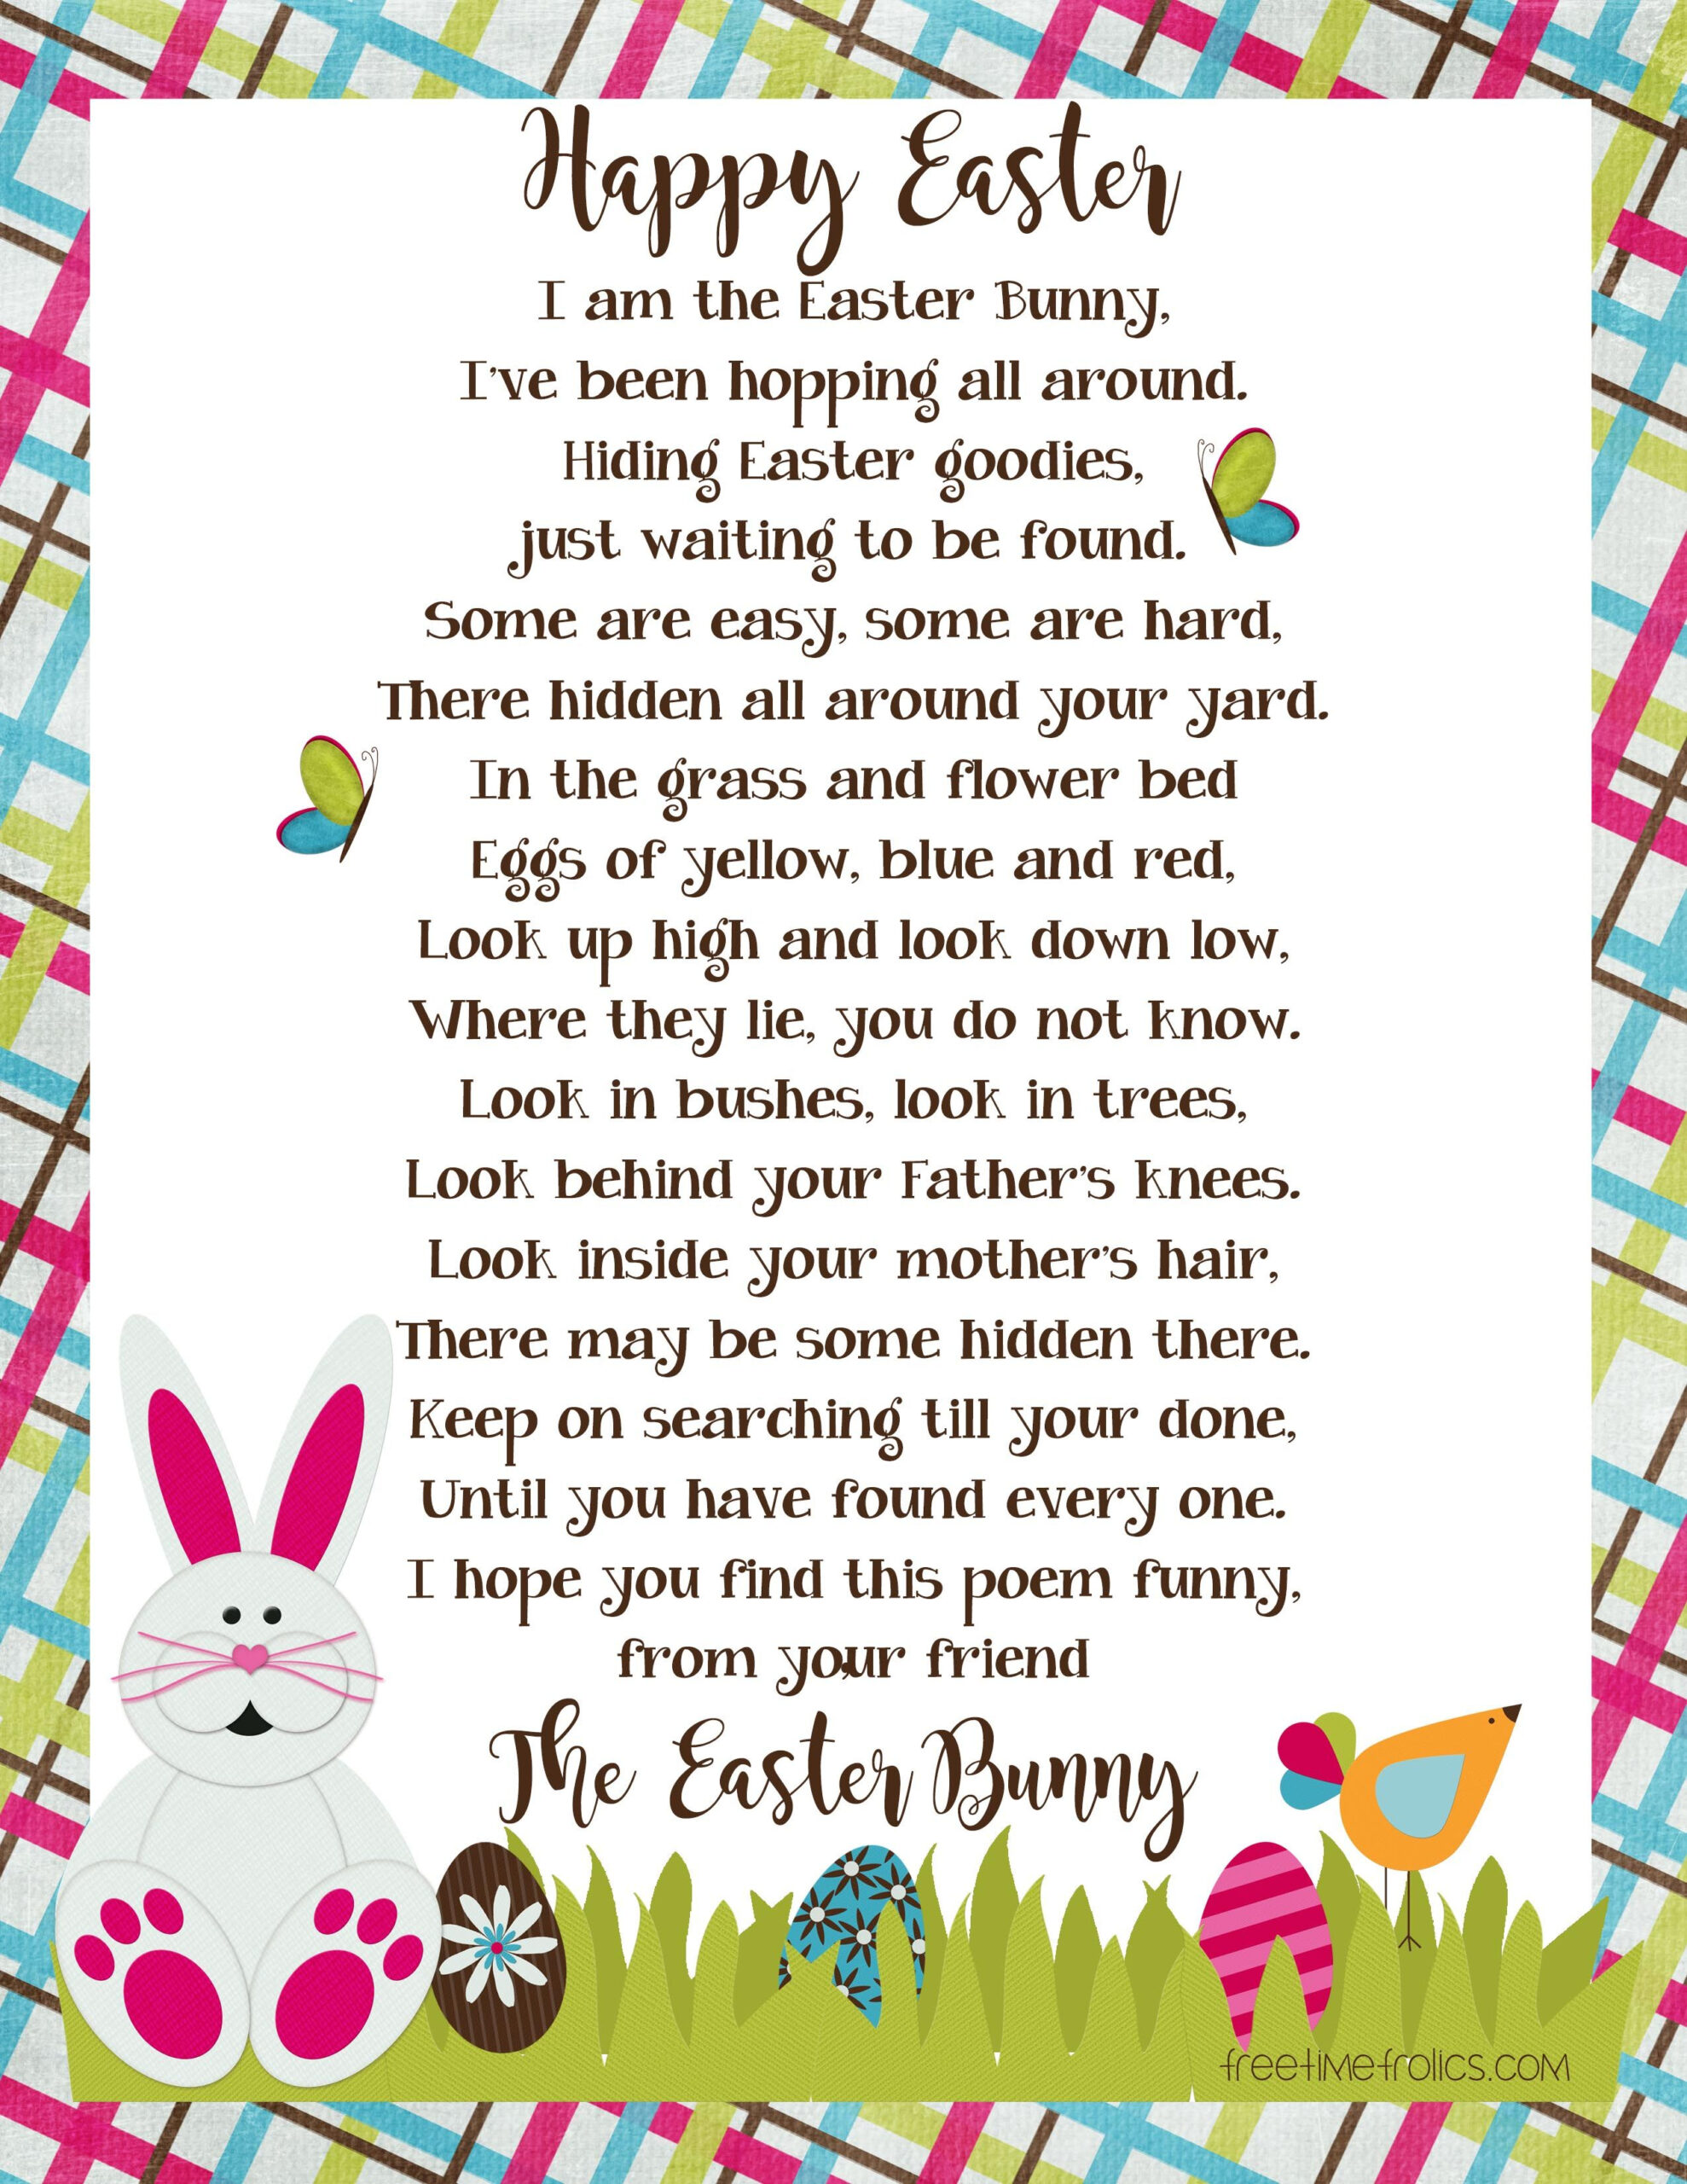 Easter Bunny Letter Image Free Time Frolics Easter